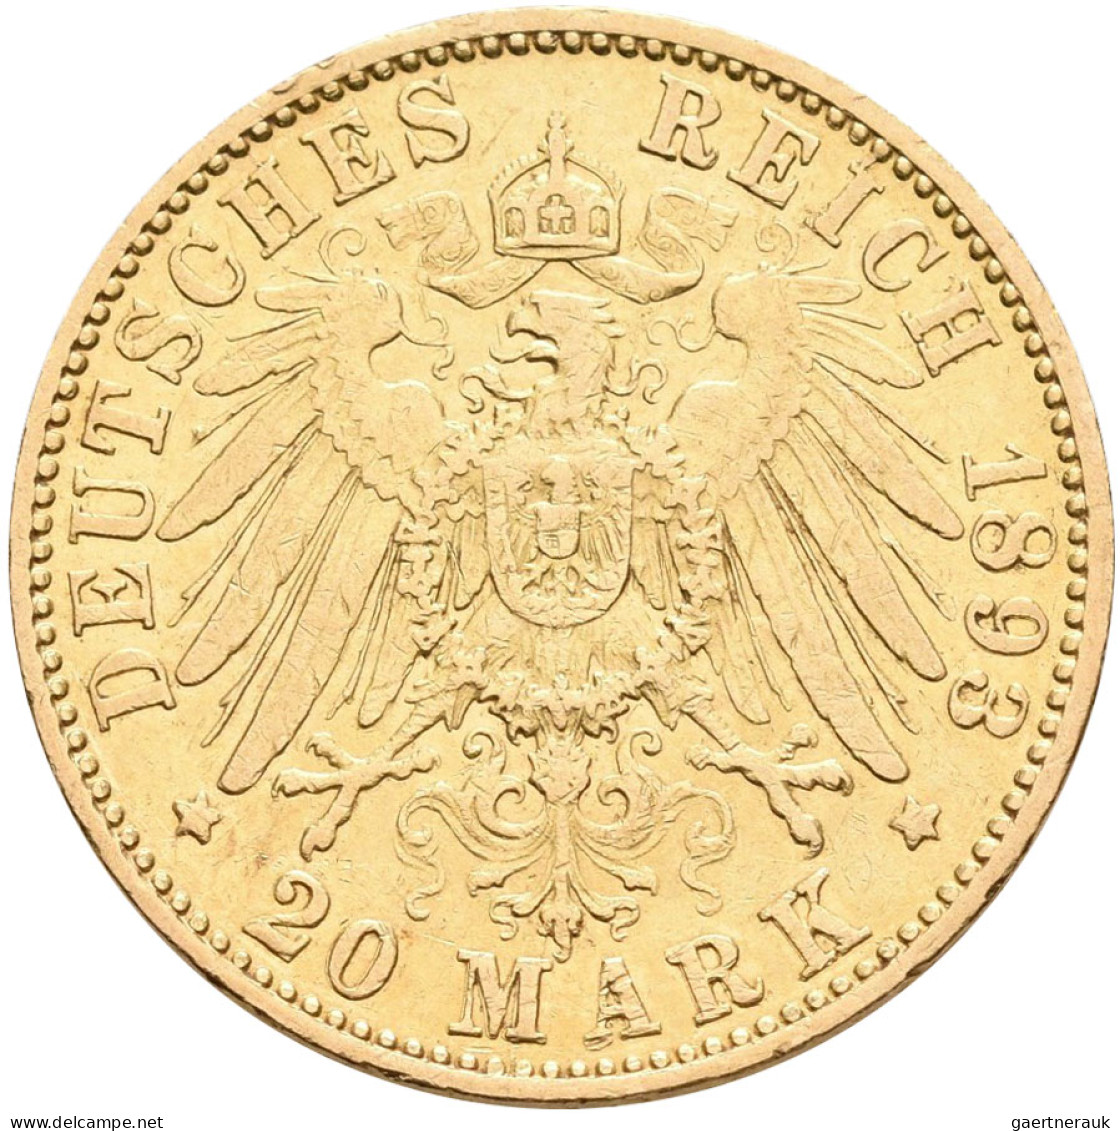 Hamburg - Anlagegold: Freie Und Hansestadt: 20 Mark 1893, Jaeger 212. 7,965 G, 9 - 5, 10 & 20 Mark Or